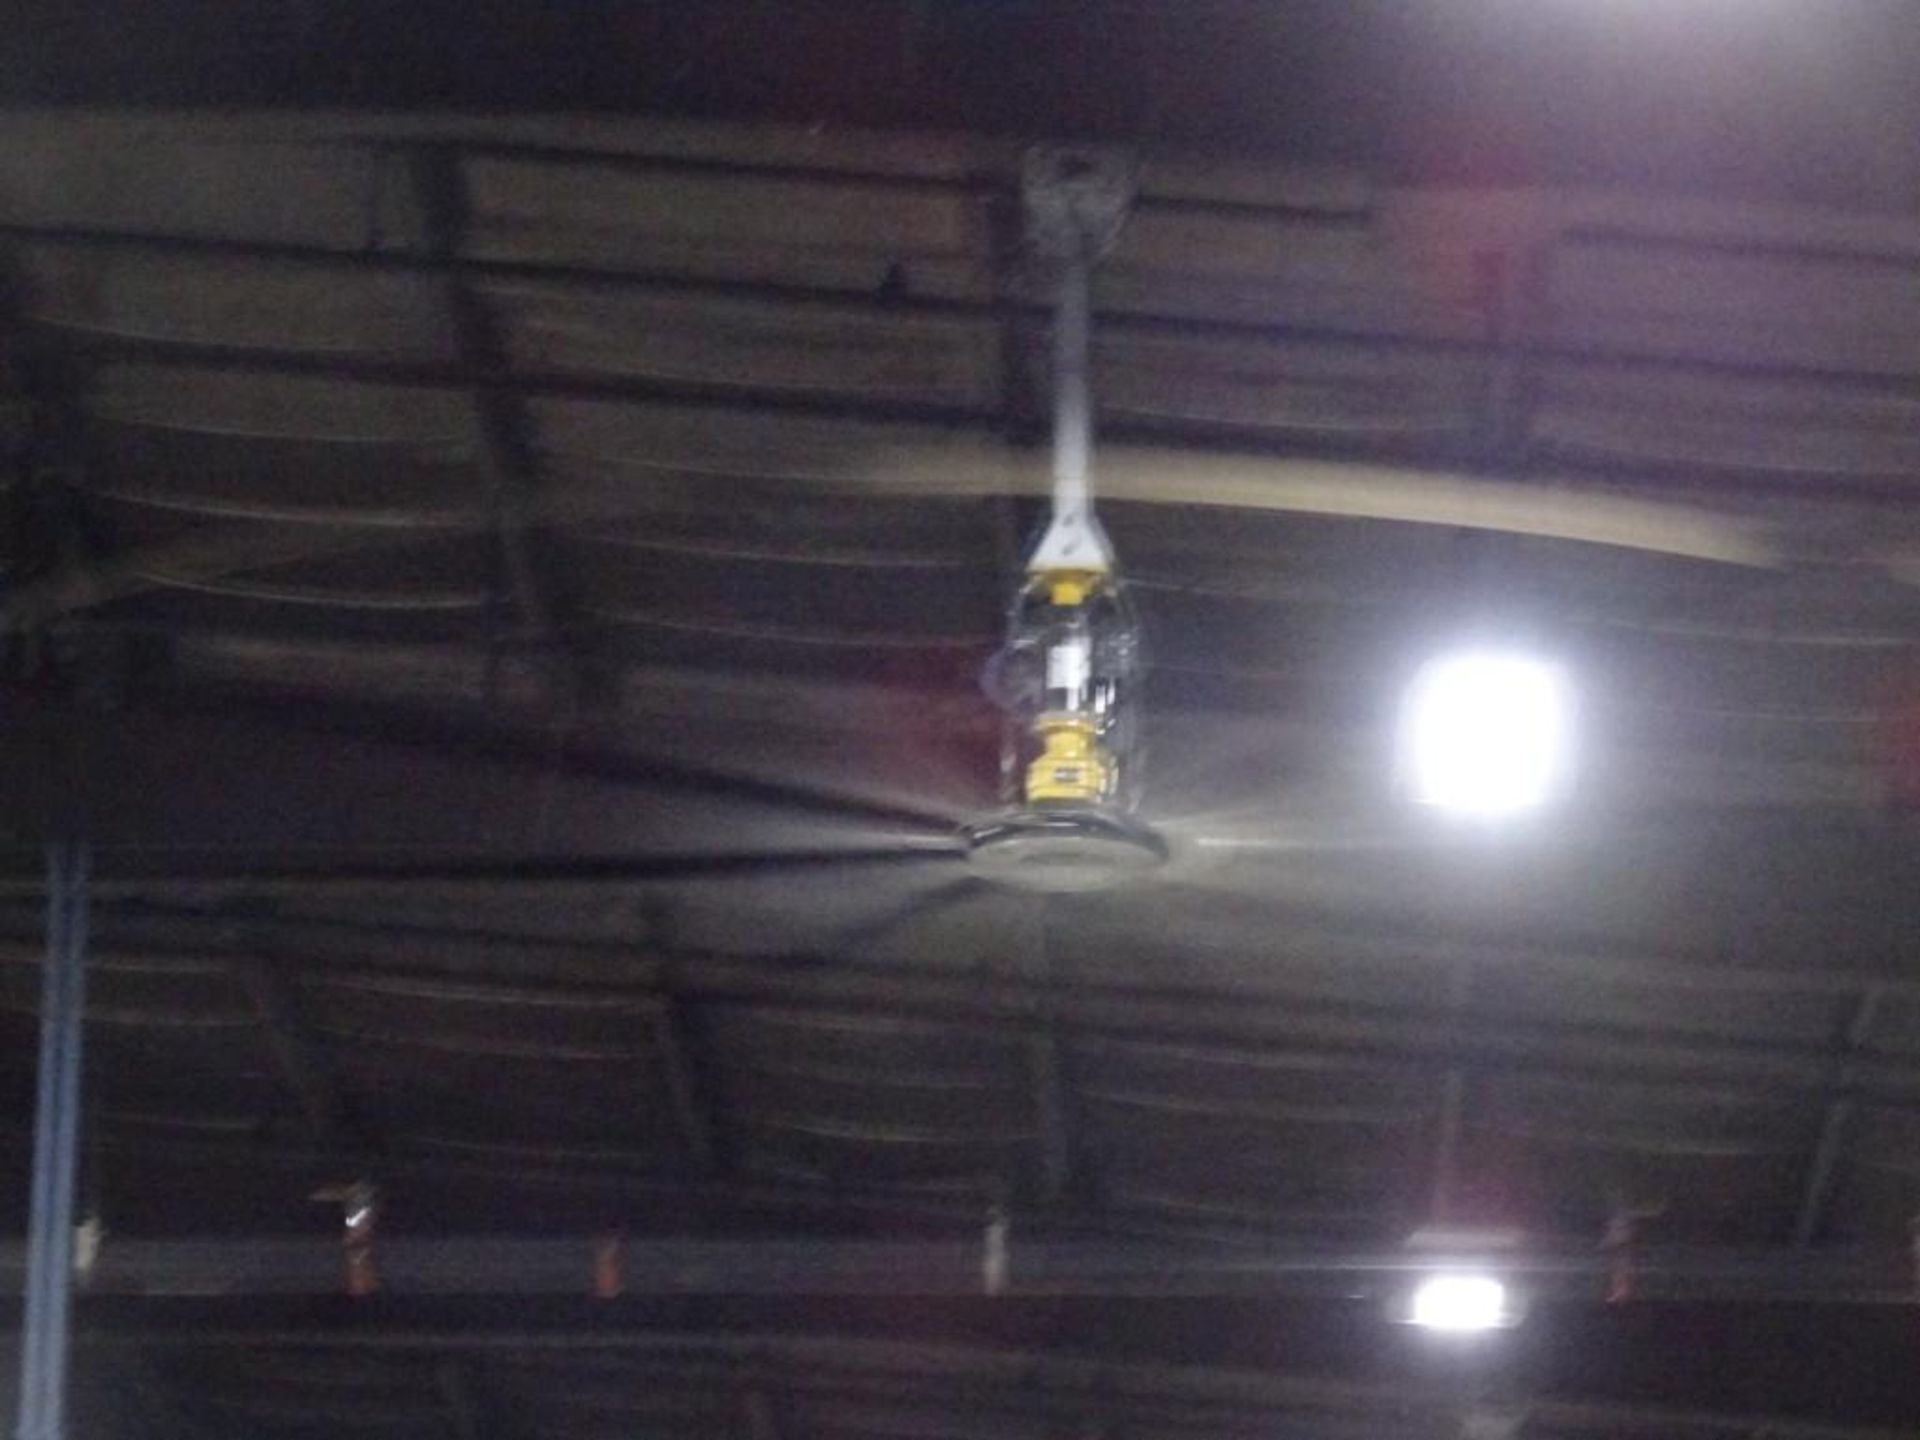 Big Ass Fan Industrial Ceiling Fan 10' Blades